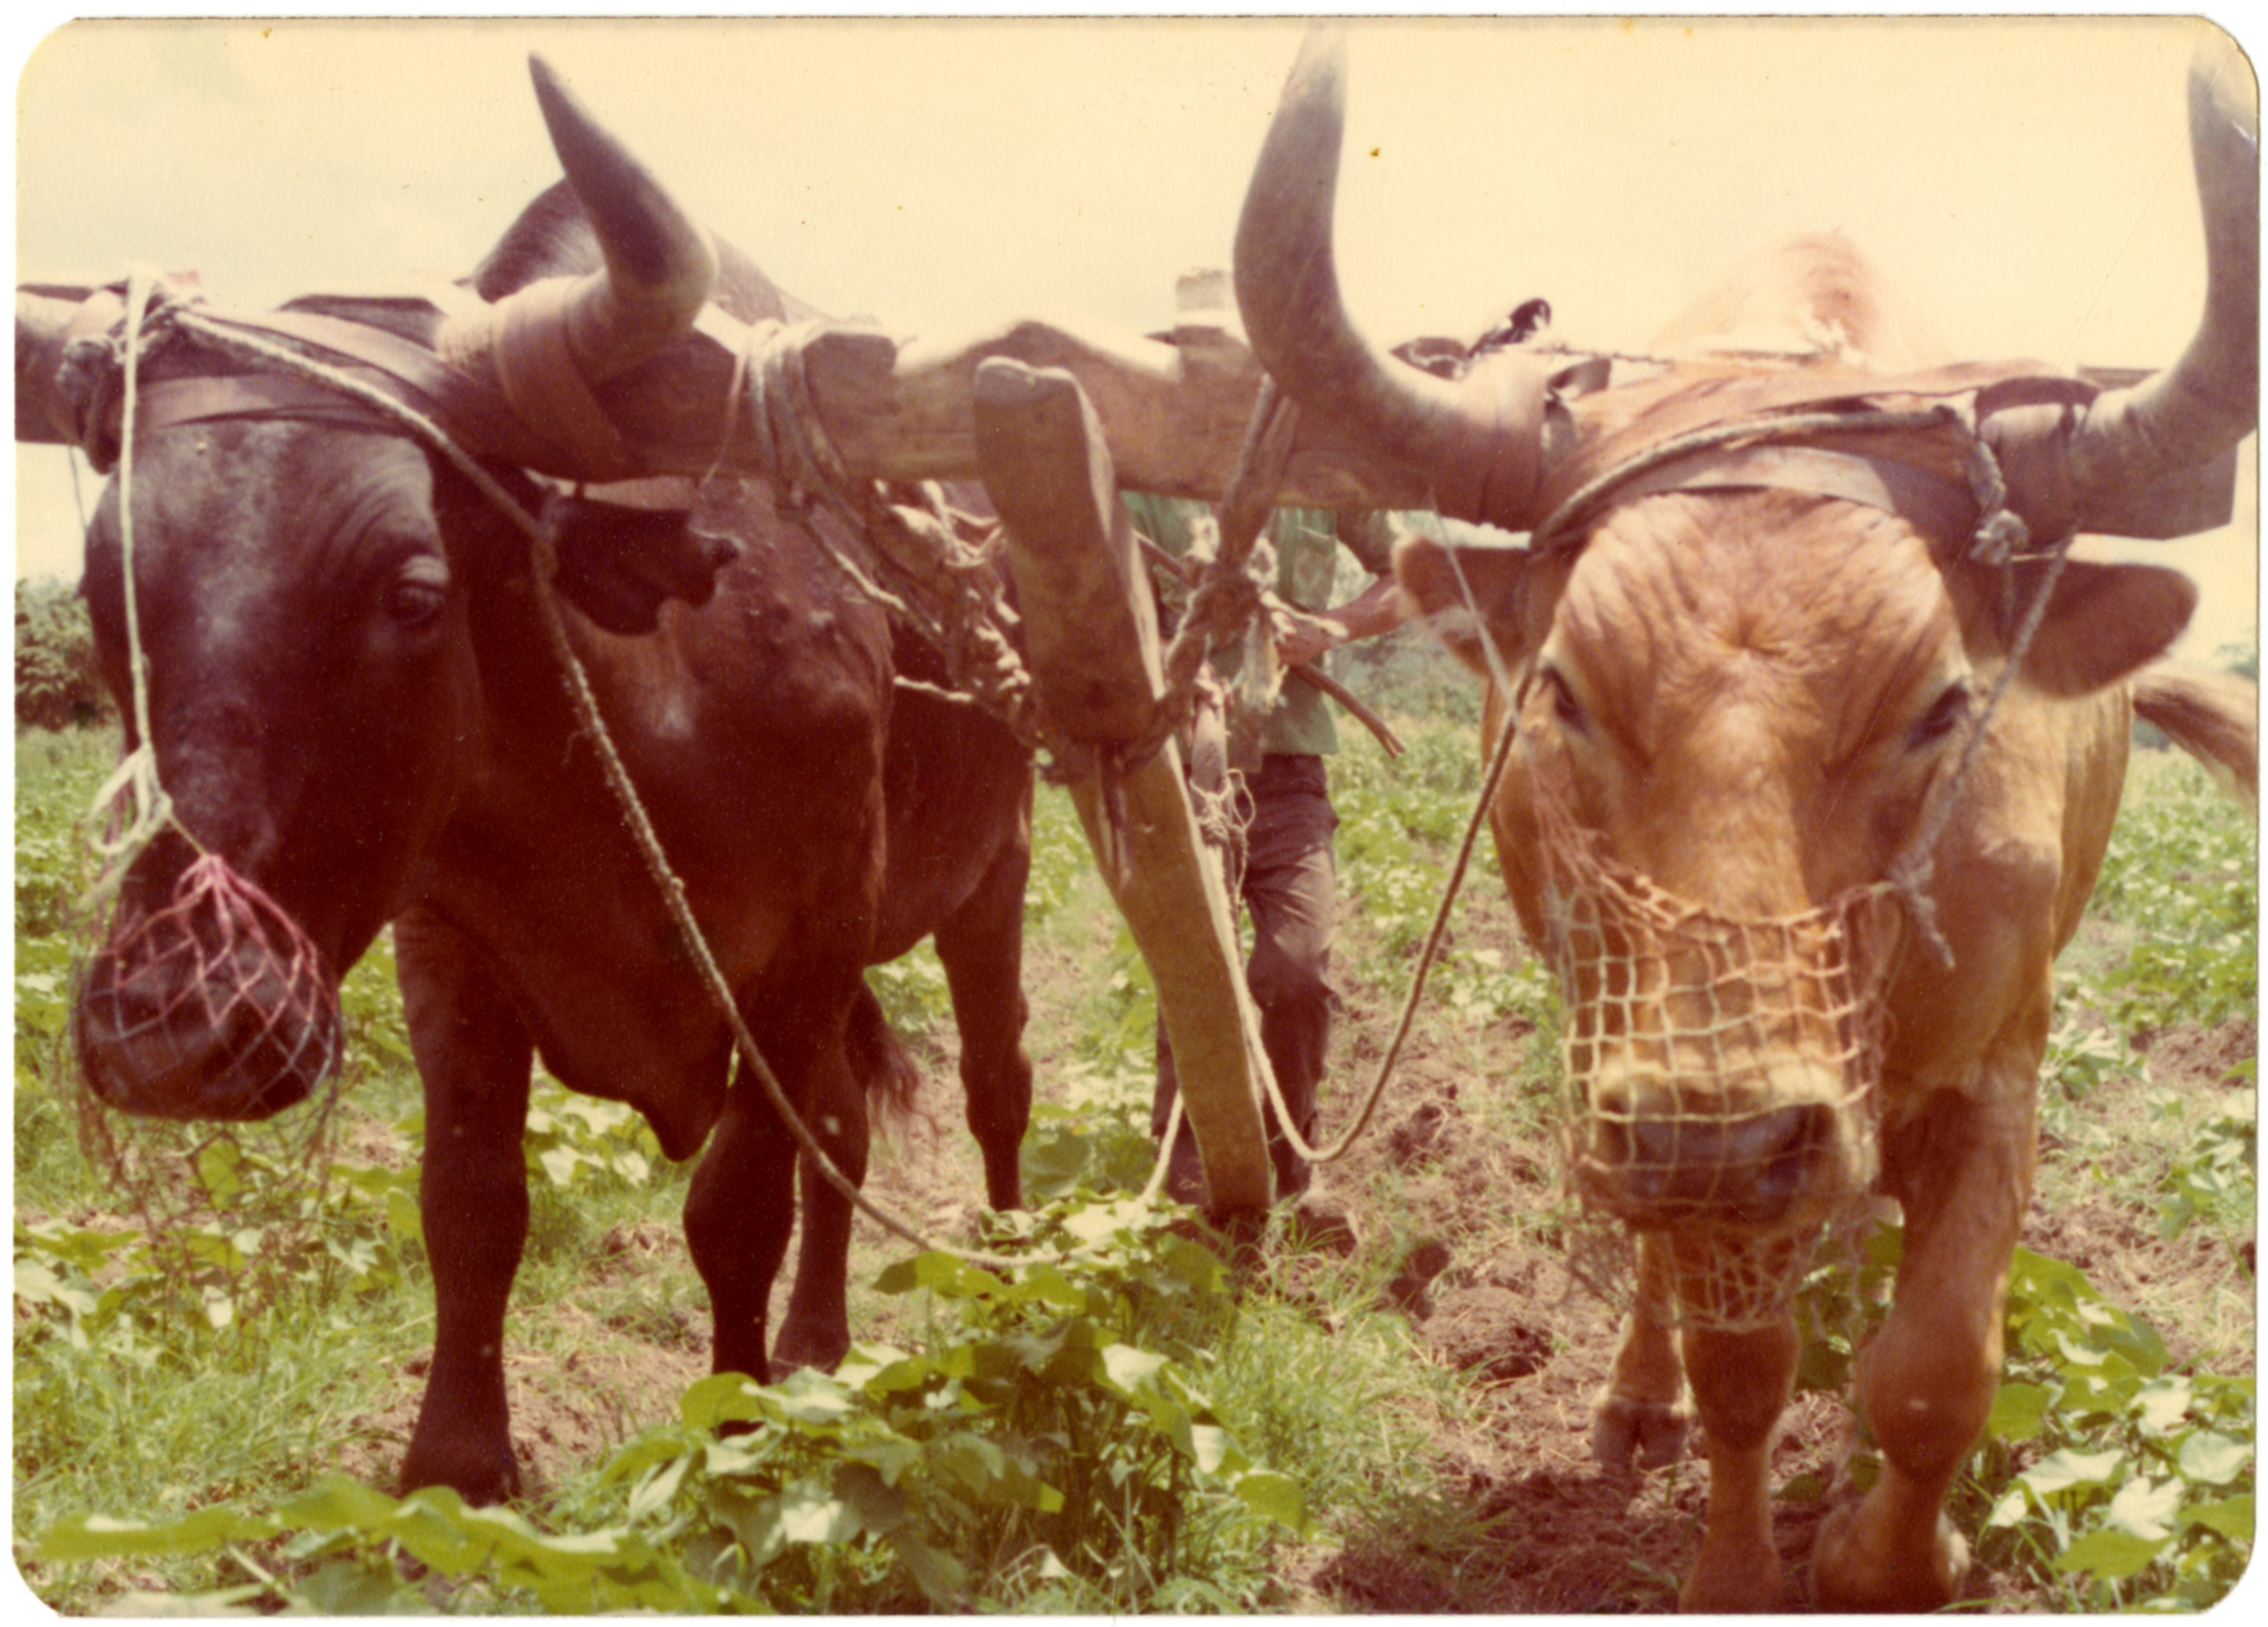 Oxen in Honduras